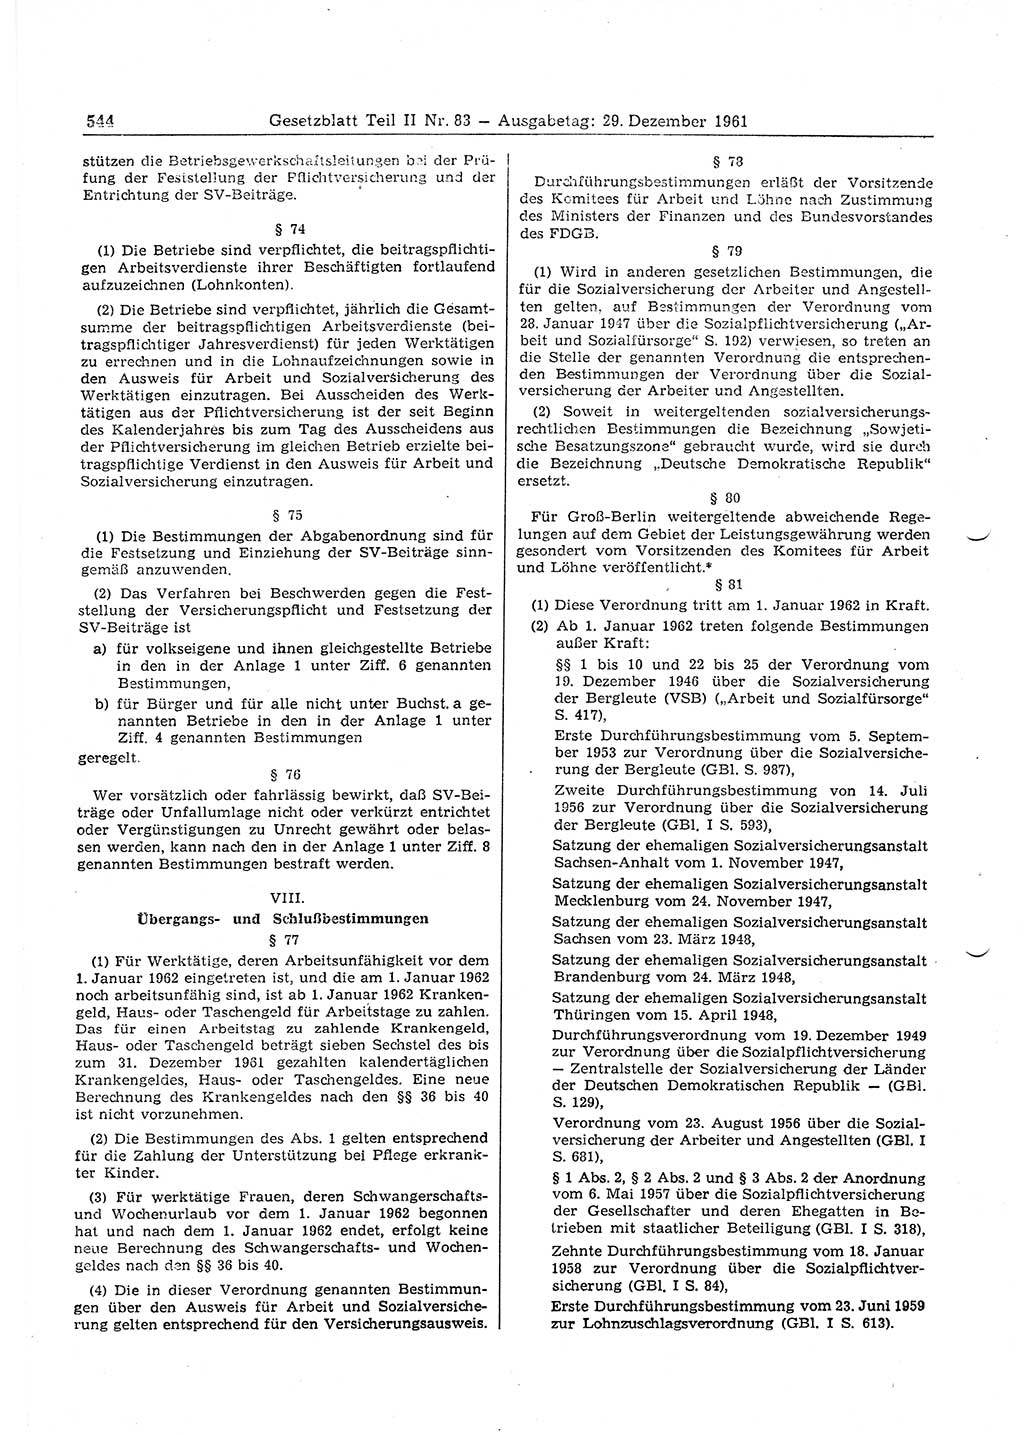 Gesetzblatt (GBl.) der Deutschen Demokratischen Republik (DDR) Teil ⅠⅠ 1961, Seite 544 (GBl. DDR ⅠⅠ 1961, S. 544)